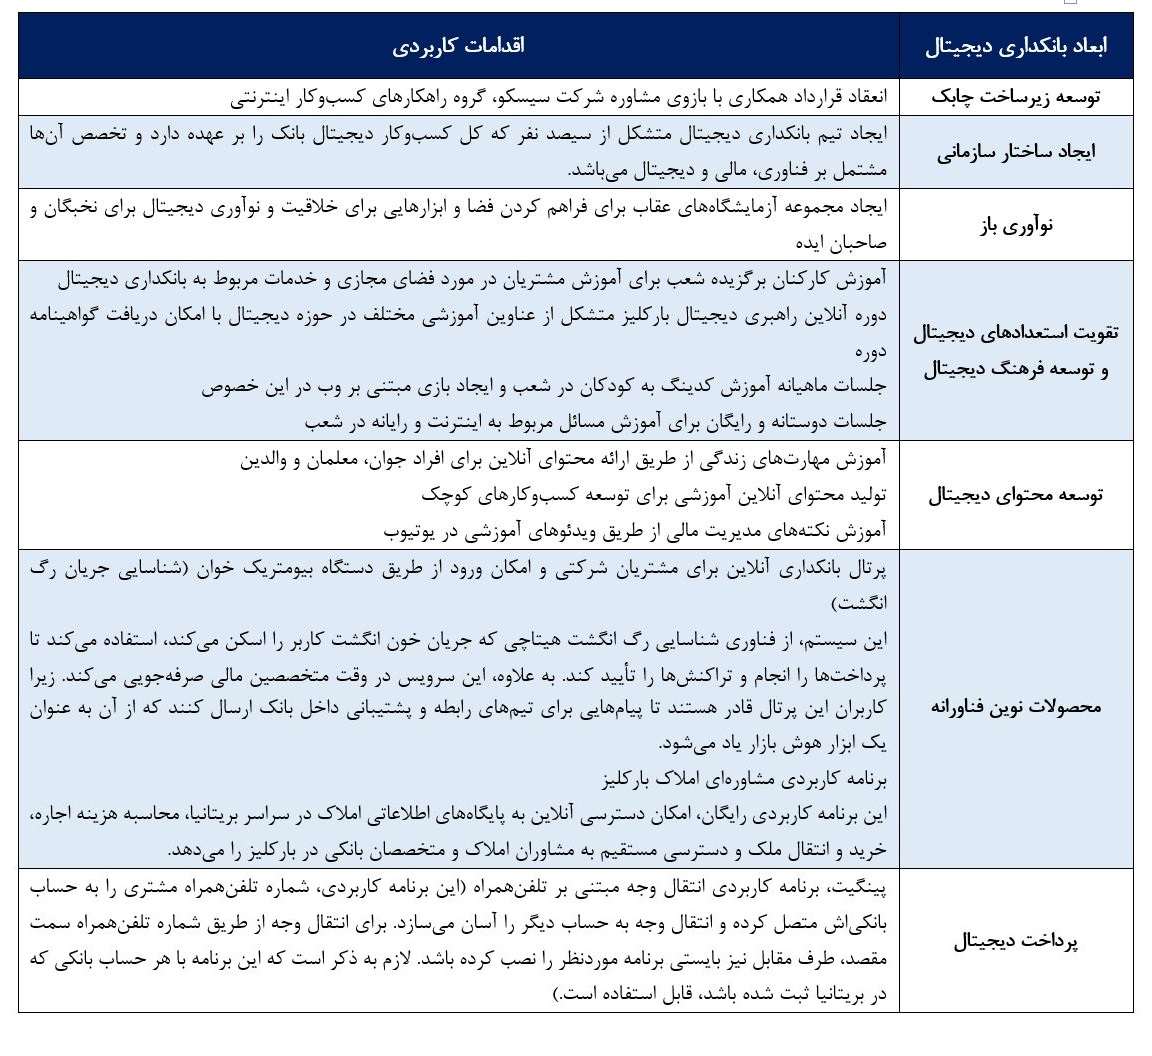 جدول 1: اقدامات بانک بارکلیز در حوزه بانکداری دیجیتال